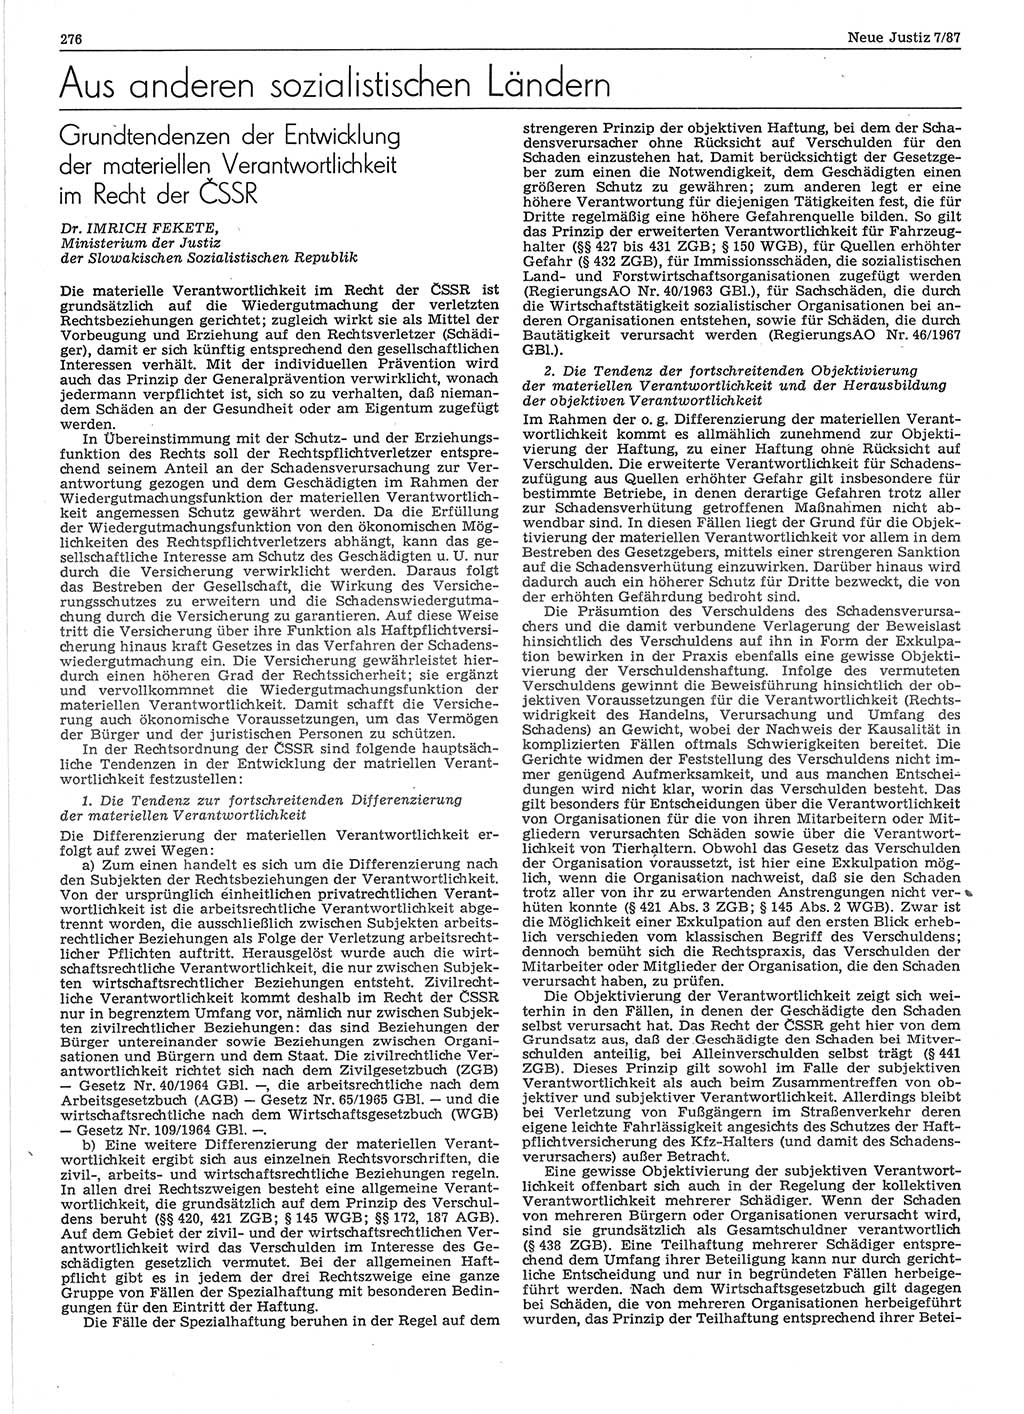 Neue Justiz (NJ), Zeitschrift für sozialistisches Recht und Gesetzlichkeit [Deutsche Demokratische Republik (DDR)], 41. Jahrgang 1987, Seite 276 (NJ DDR 1987, S. 276)